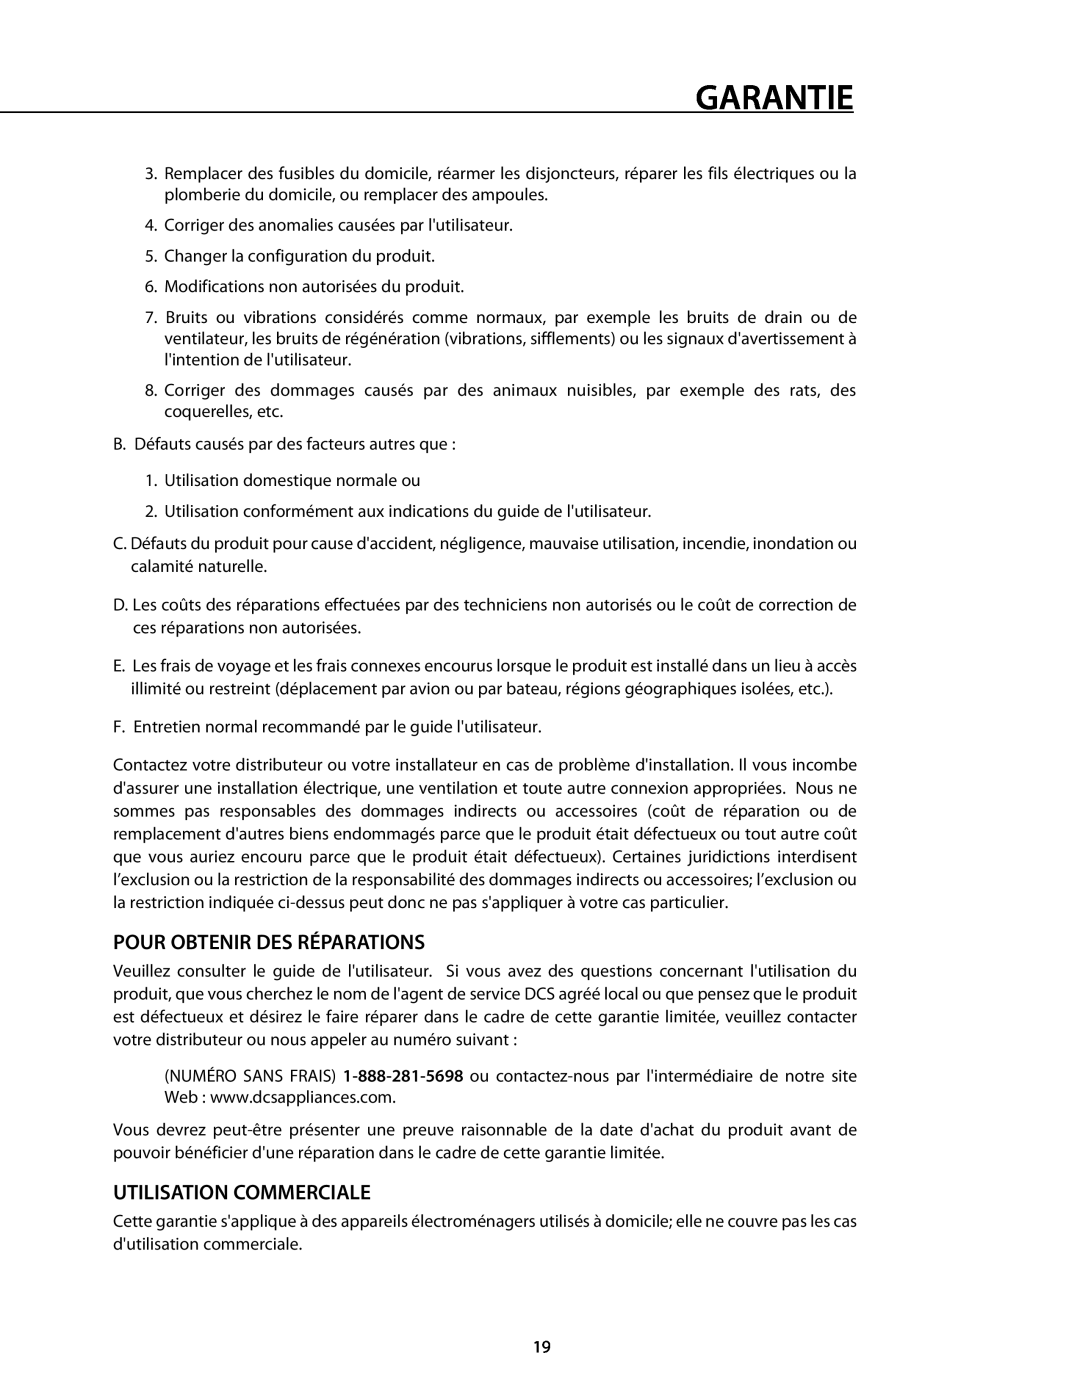 DCS 221712 manual Pour Obtenir Des Réparations, Utilisation Commerciale, Garantie 